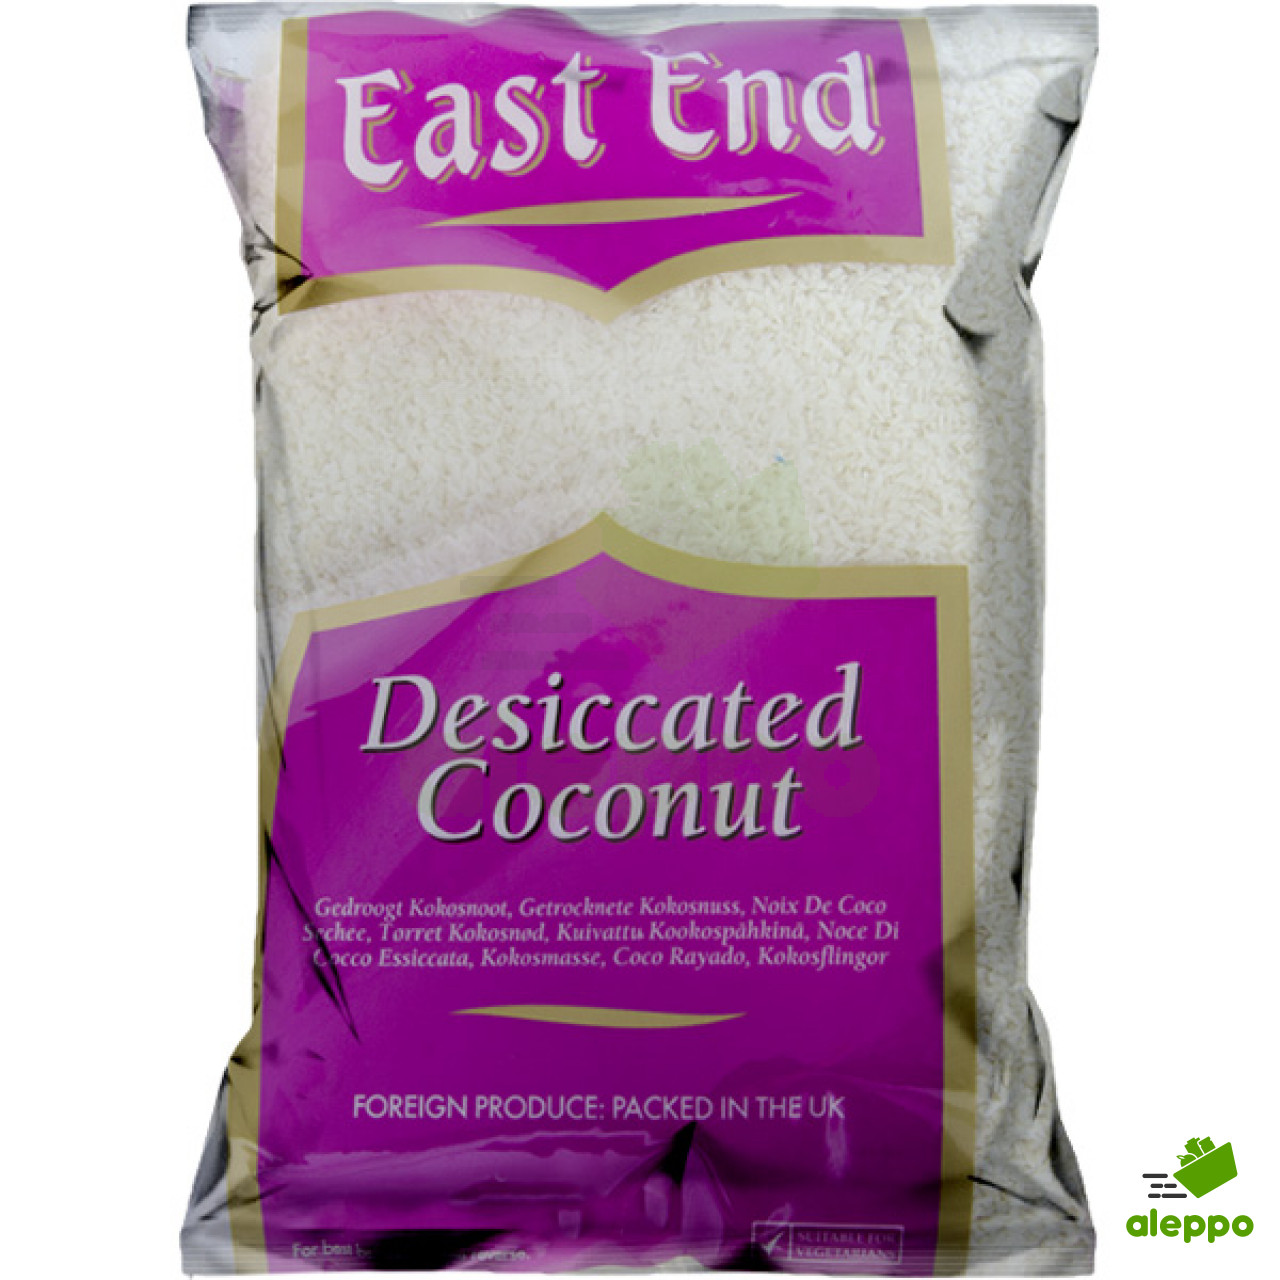 Tesco dessicated coconut